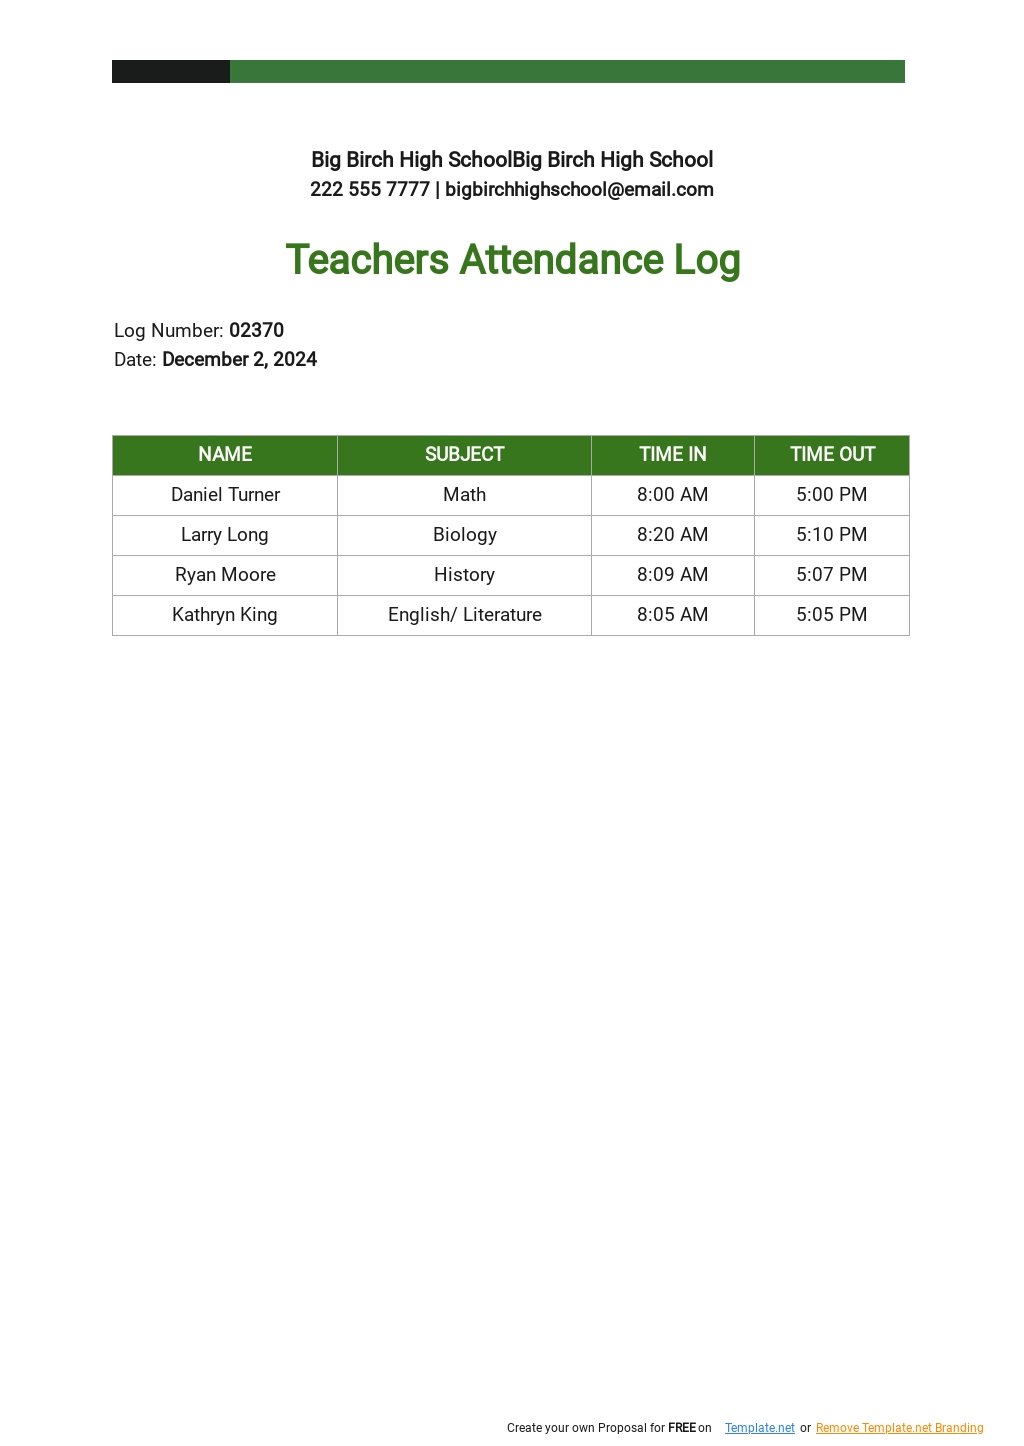 Teachers Attendance Log Template